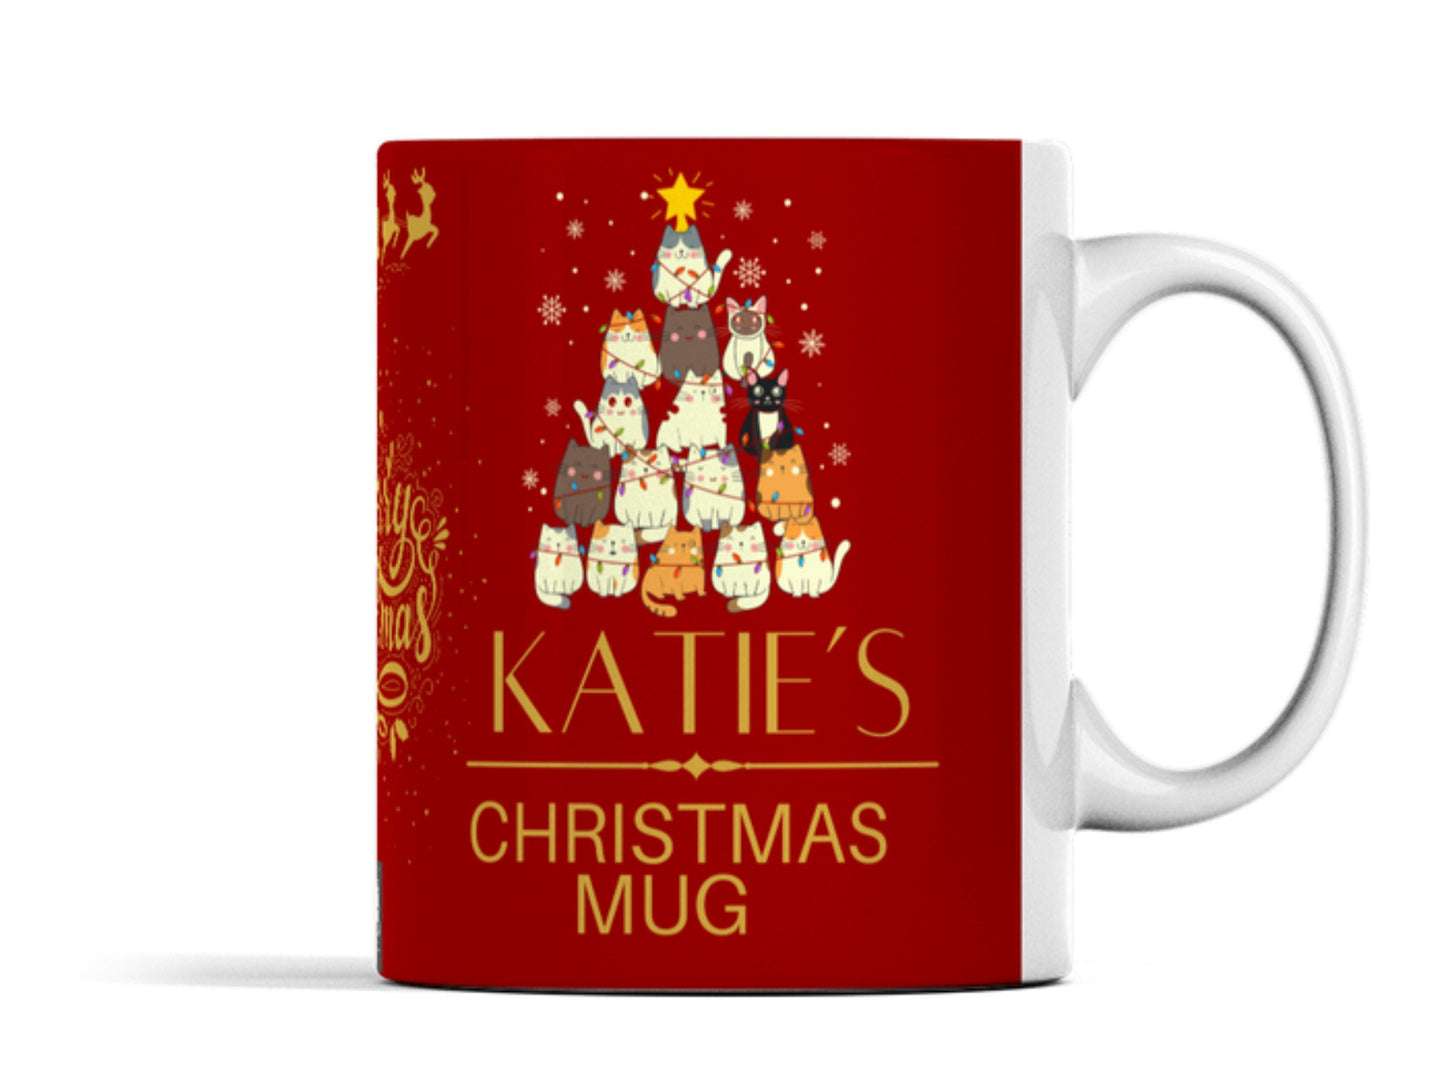 Christmas cat mug with any name